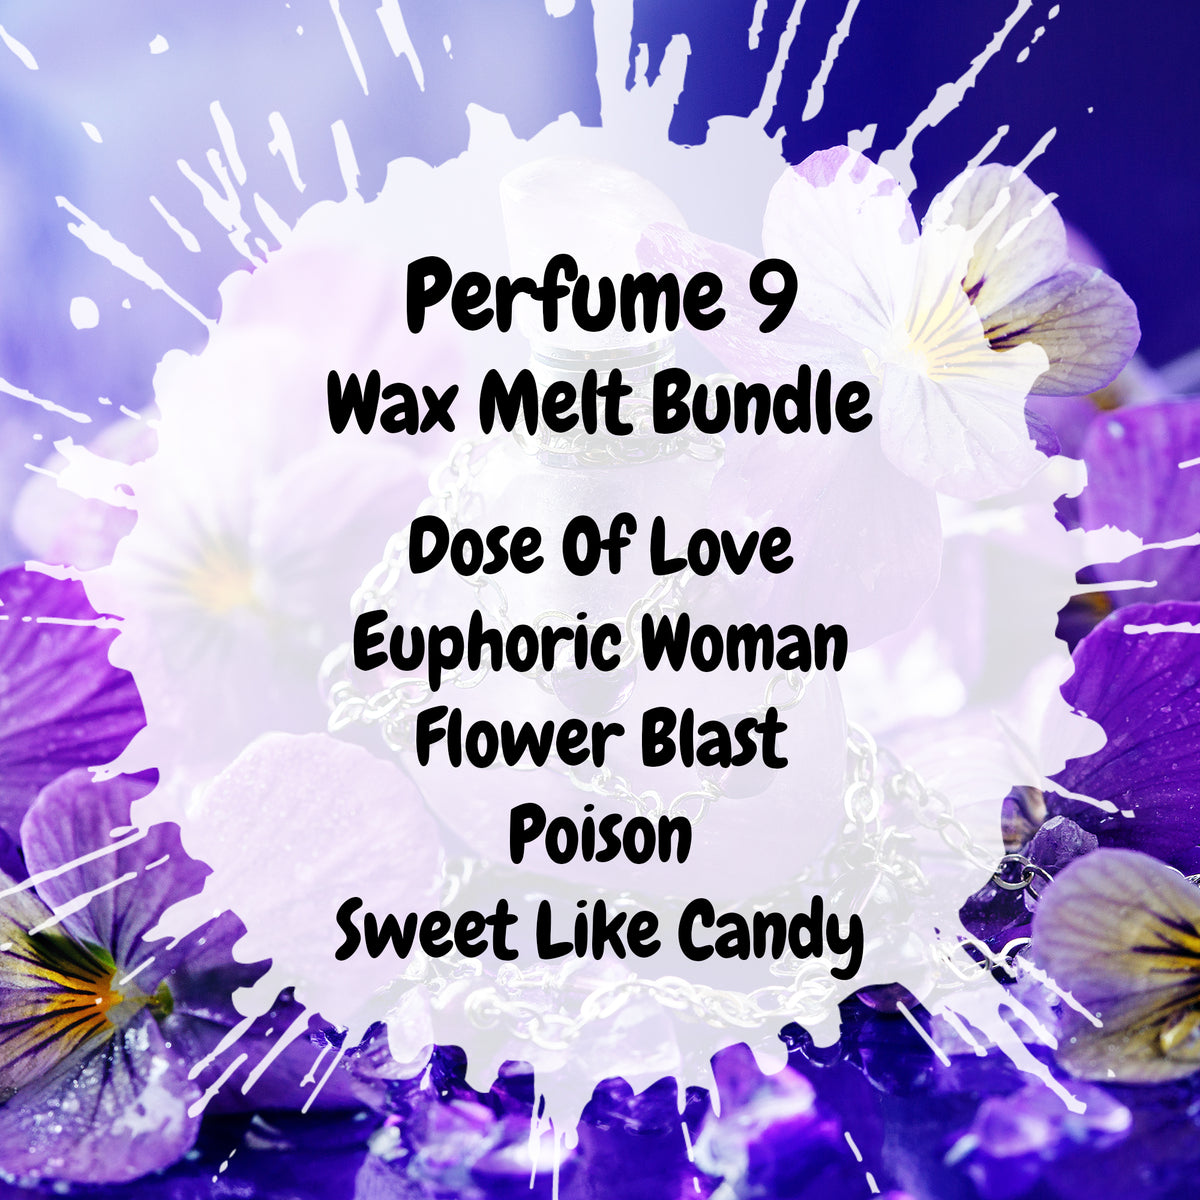 Perfume 9 Wax Melt Bundle